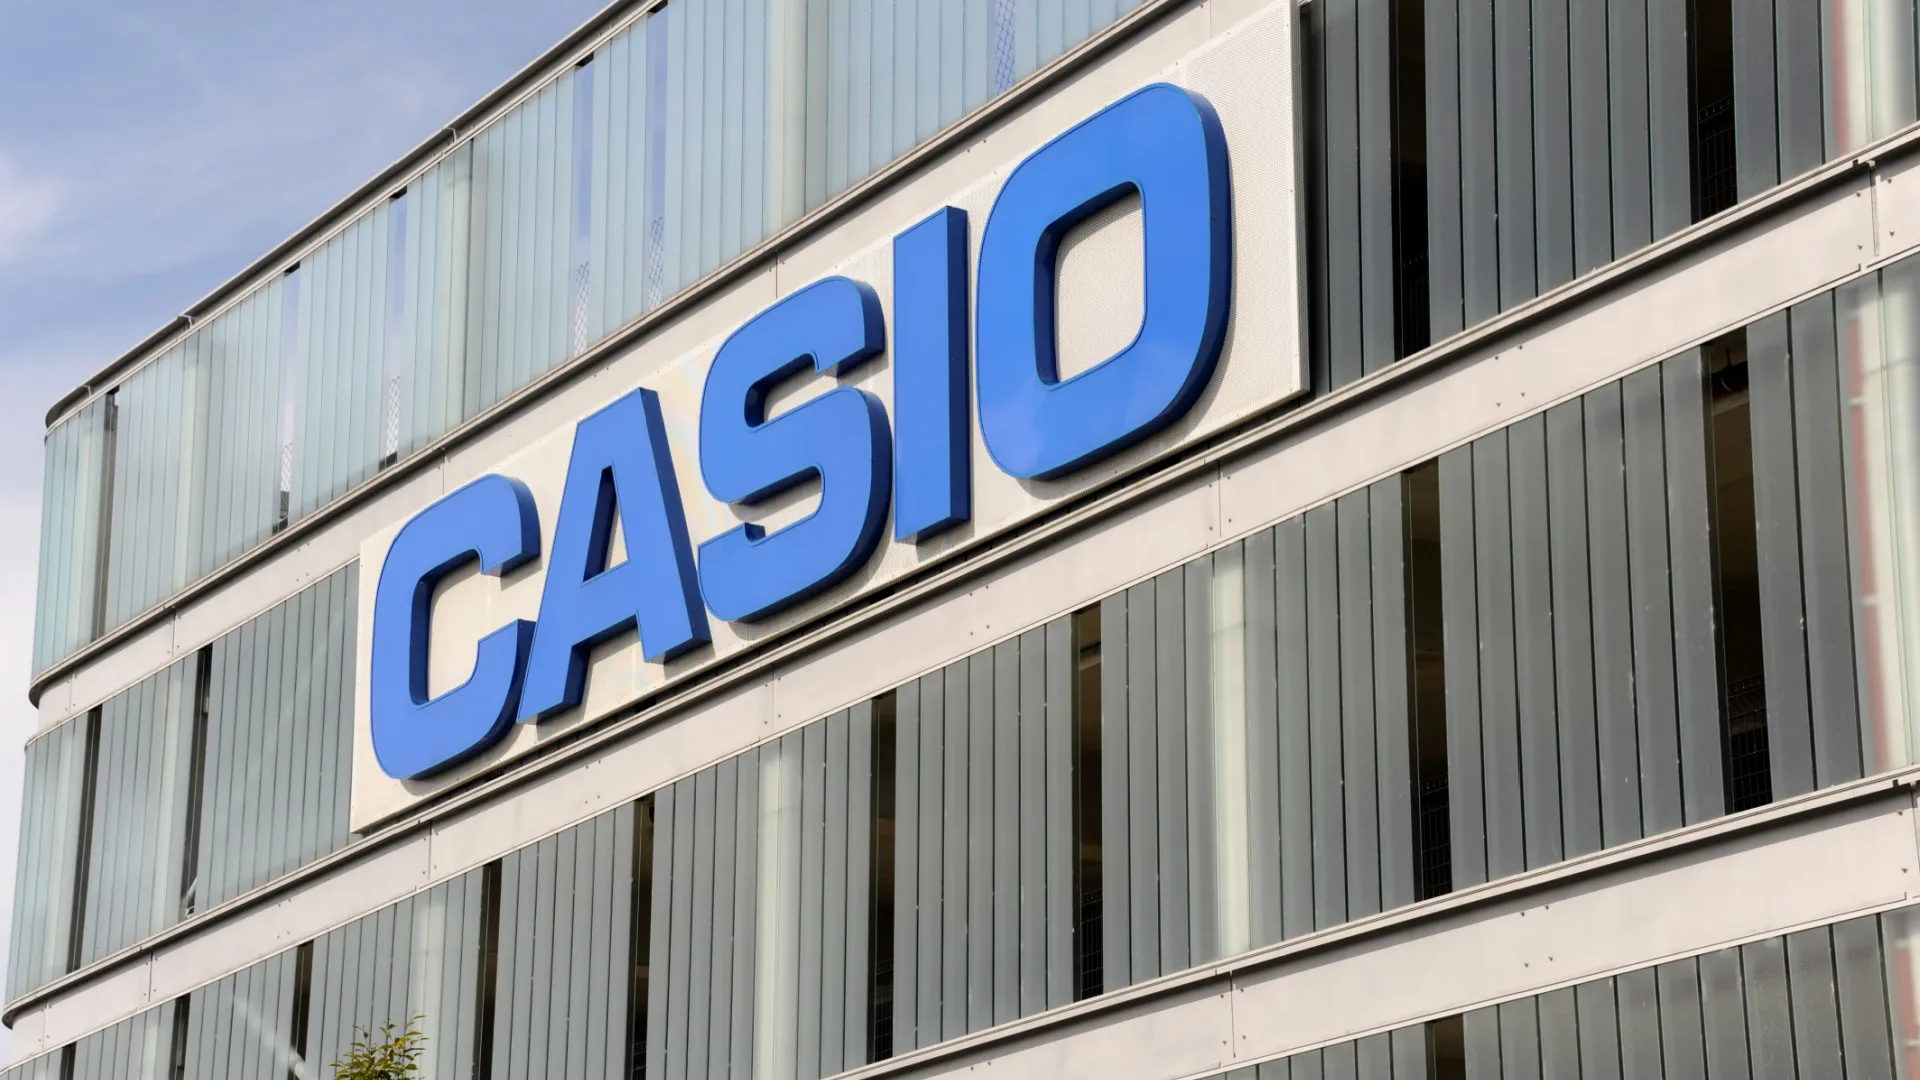 Casio da kullanıcılarının verilerini çaldırdı!